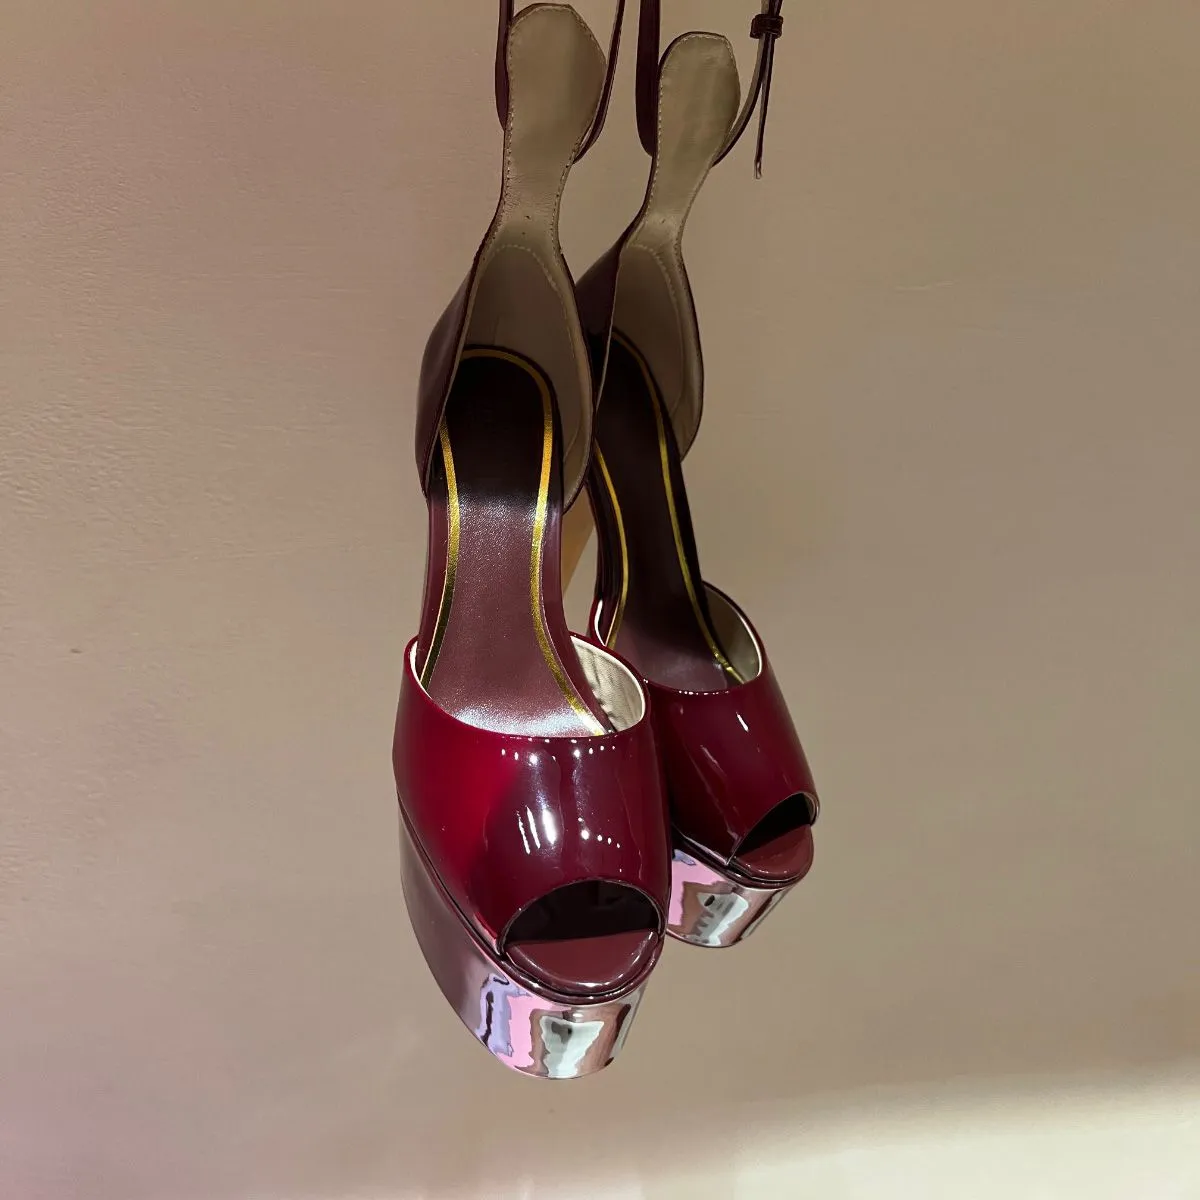 Heel Shoes For Women: आकर्षक दिखने के लिए पहनें ये हाई हील शूज, कैजुअल से  लेकर पार्टी में कर सकती हैं स्टाइल - heel shoes for women at low price with  amazing